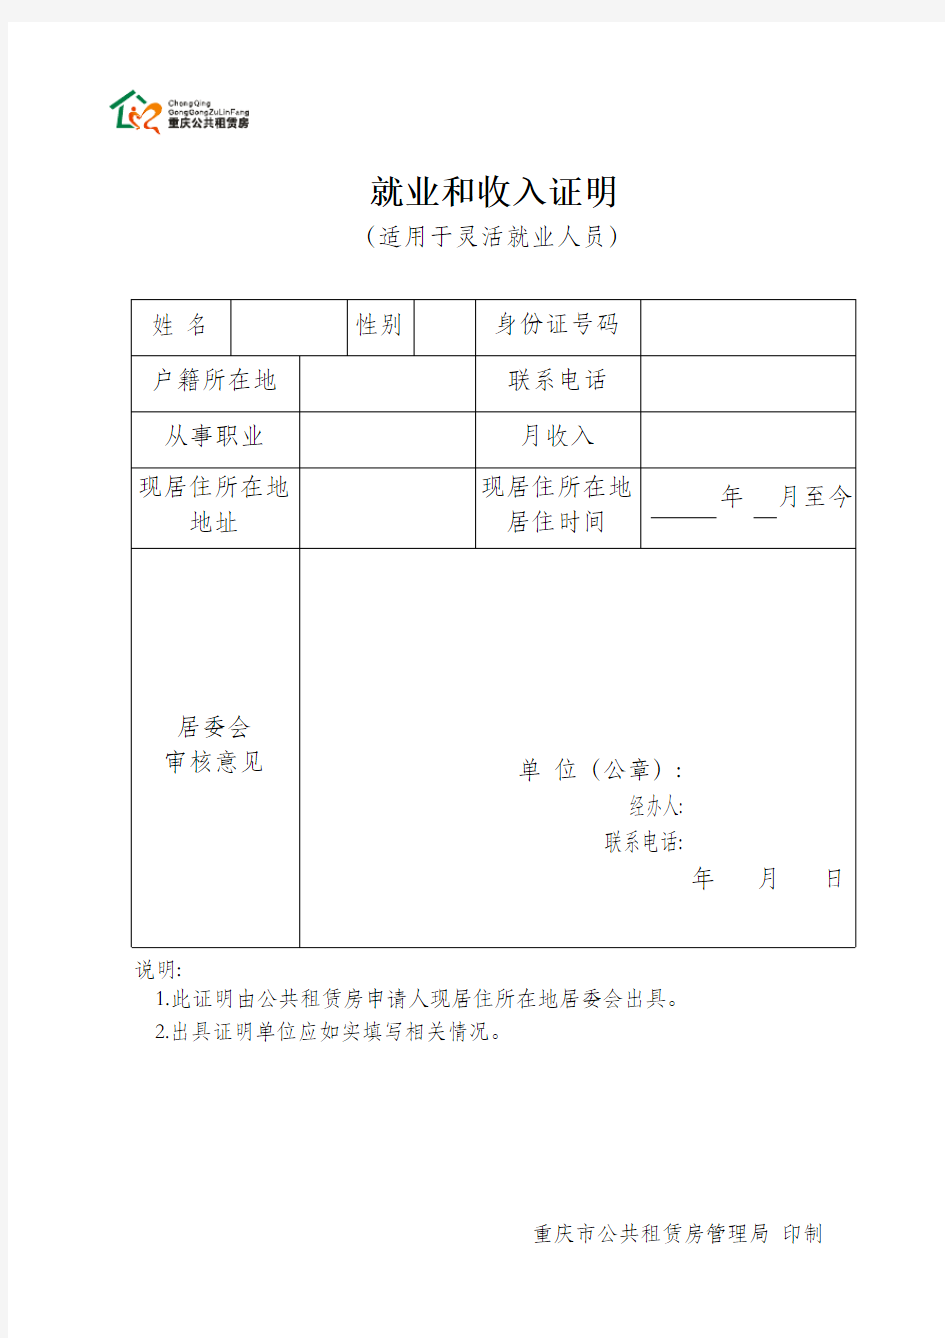 重庆公共租赁住房《就业和收入证明》表格